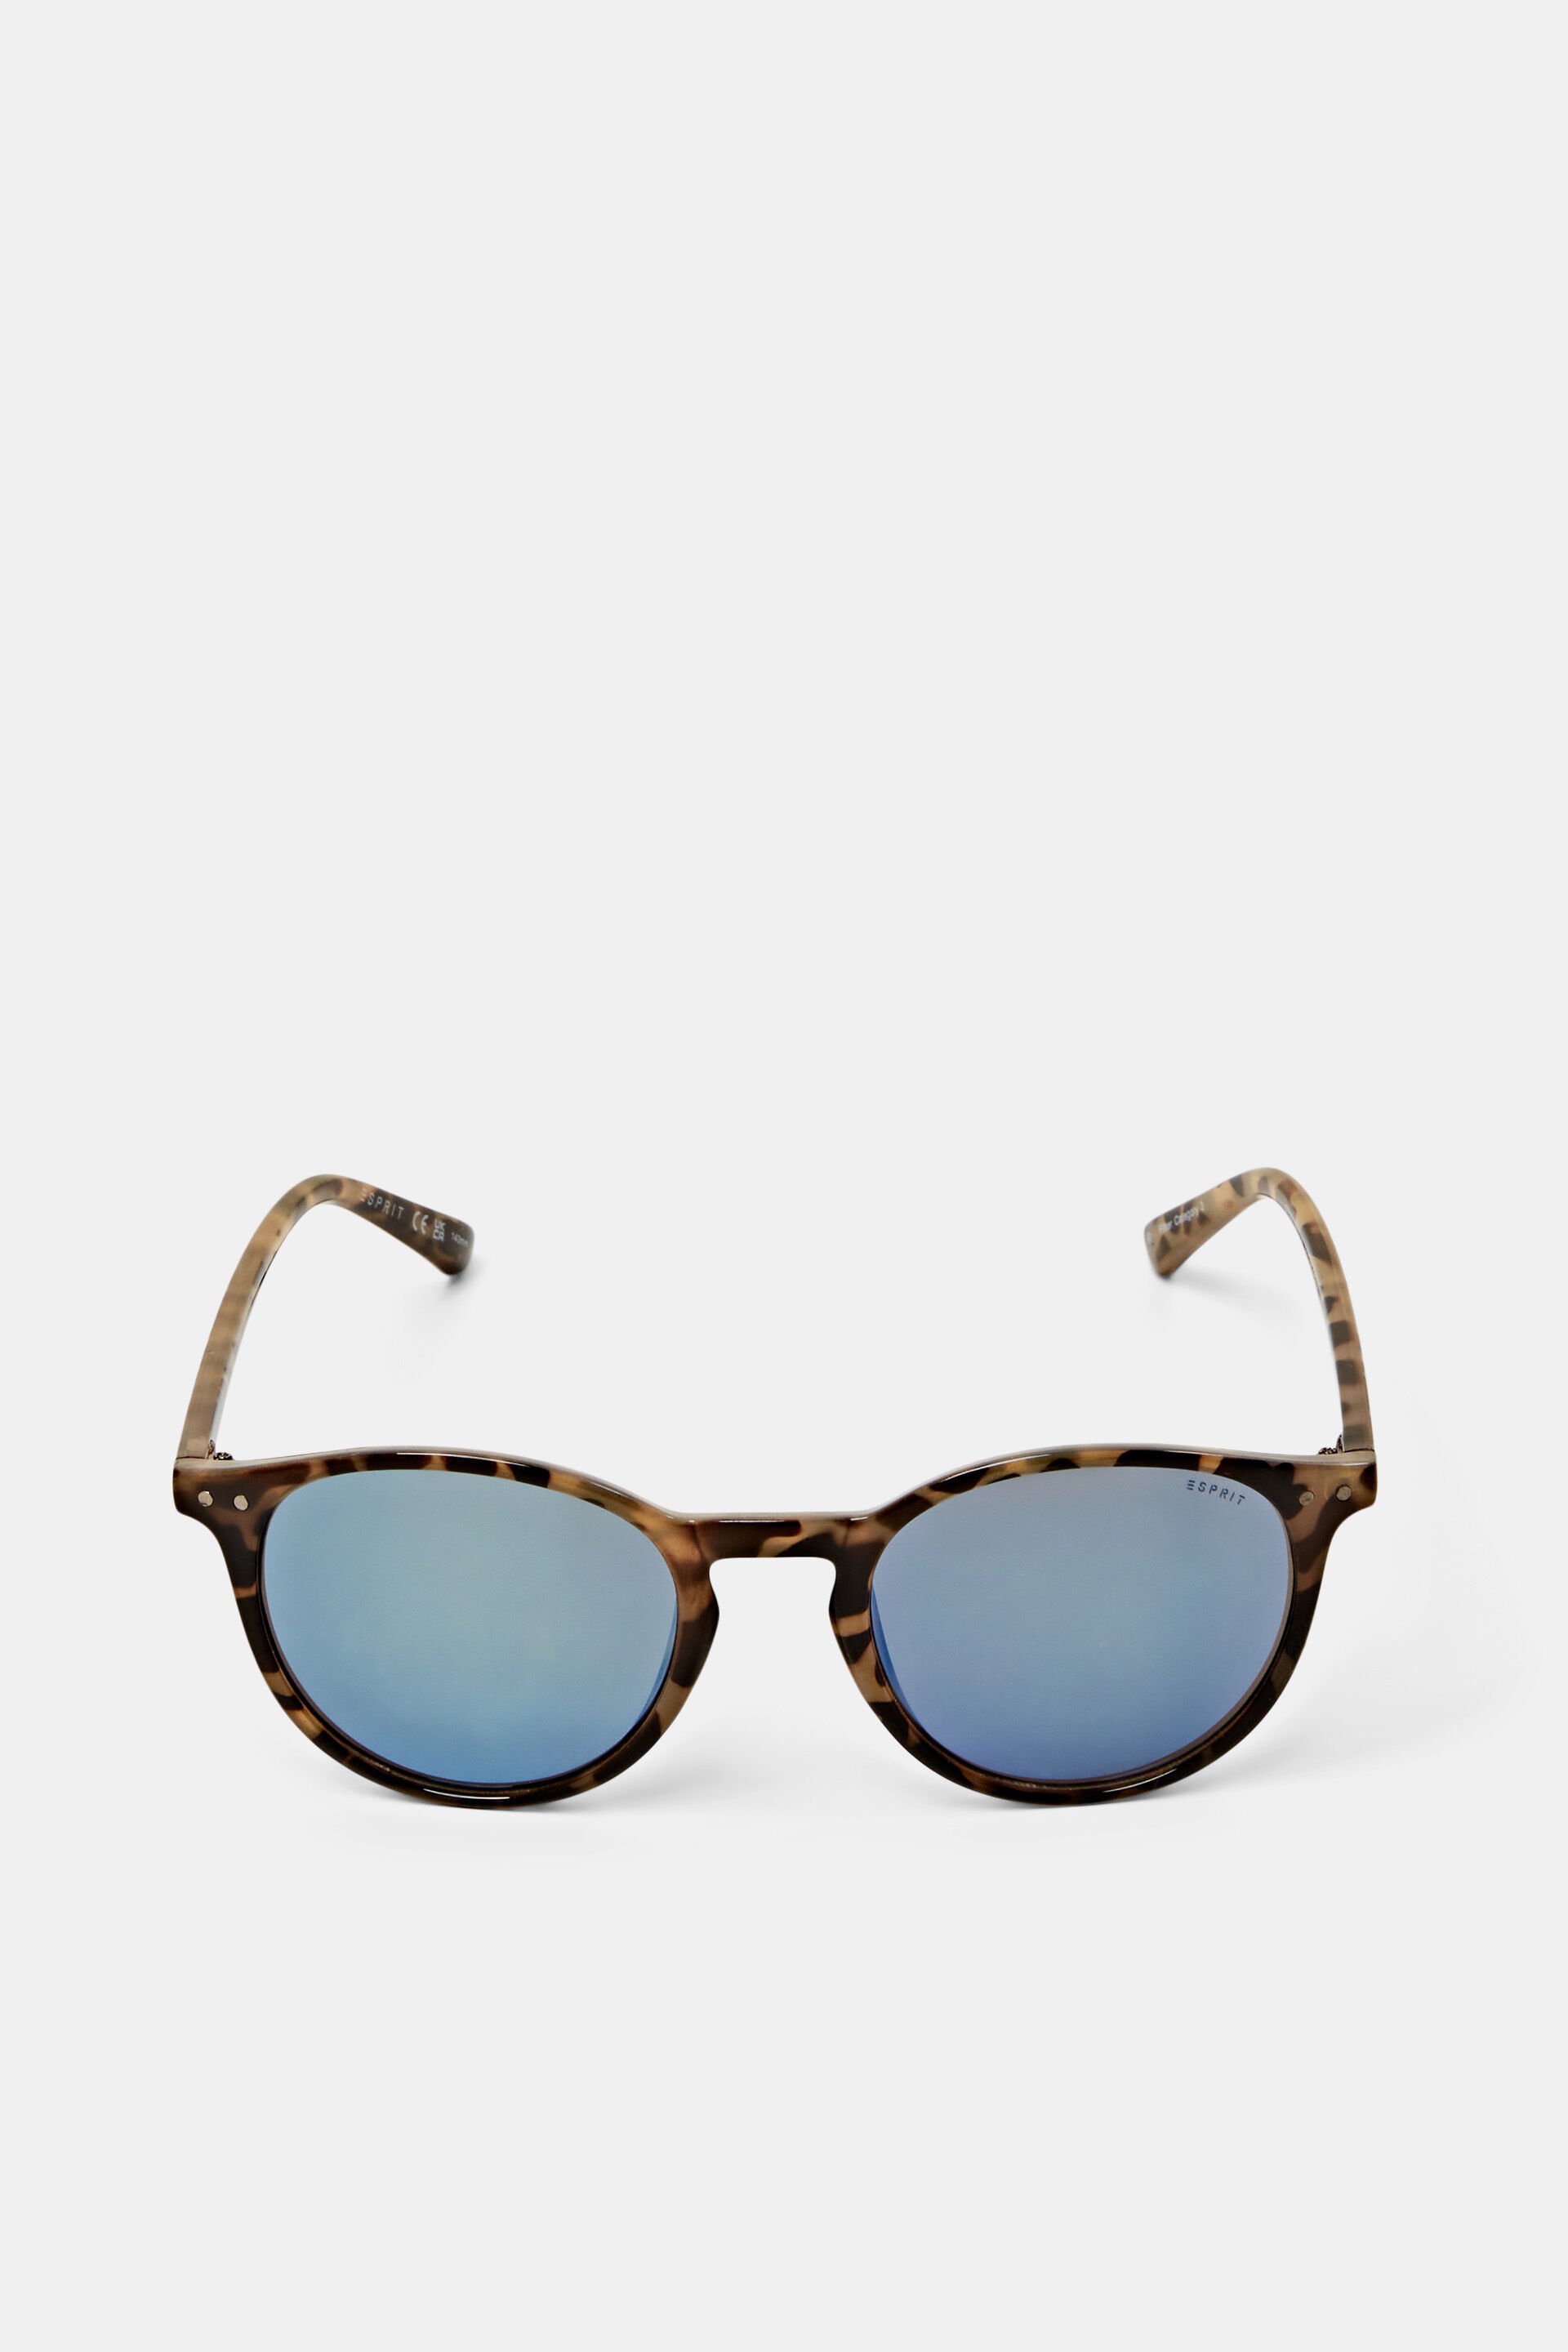 Esprit sunglasses lenses with Unisex mirrored